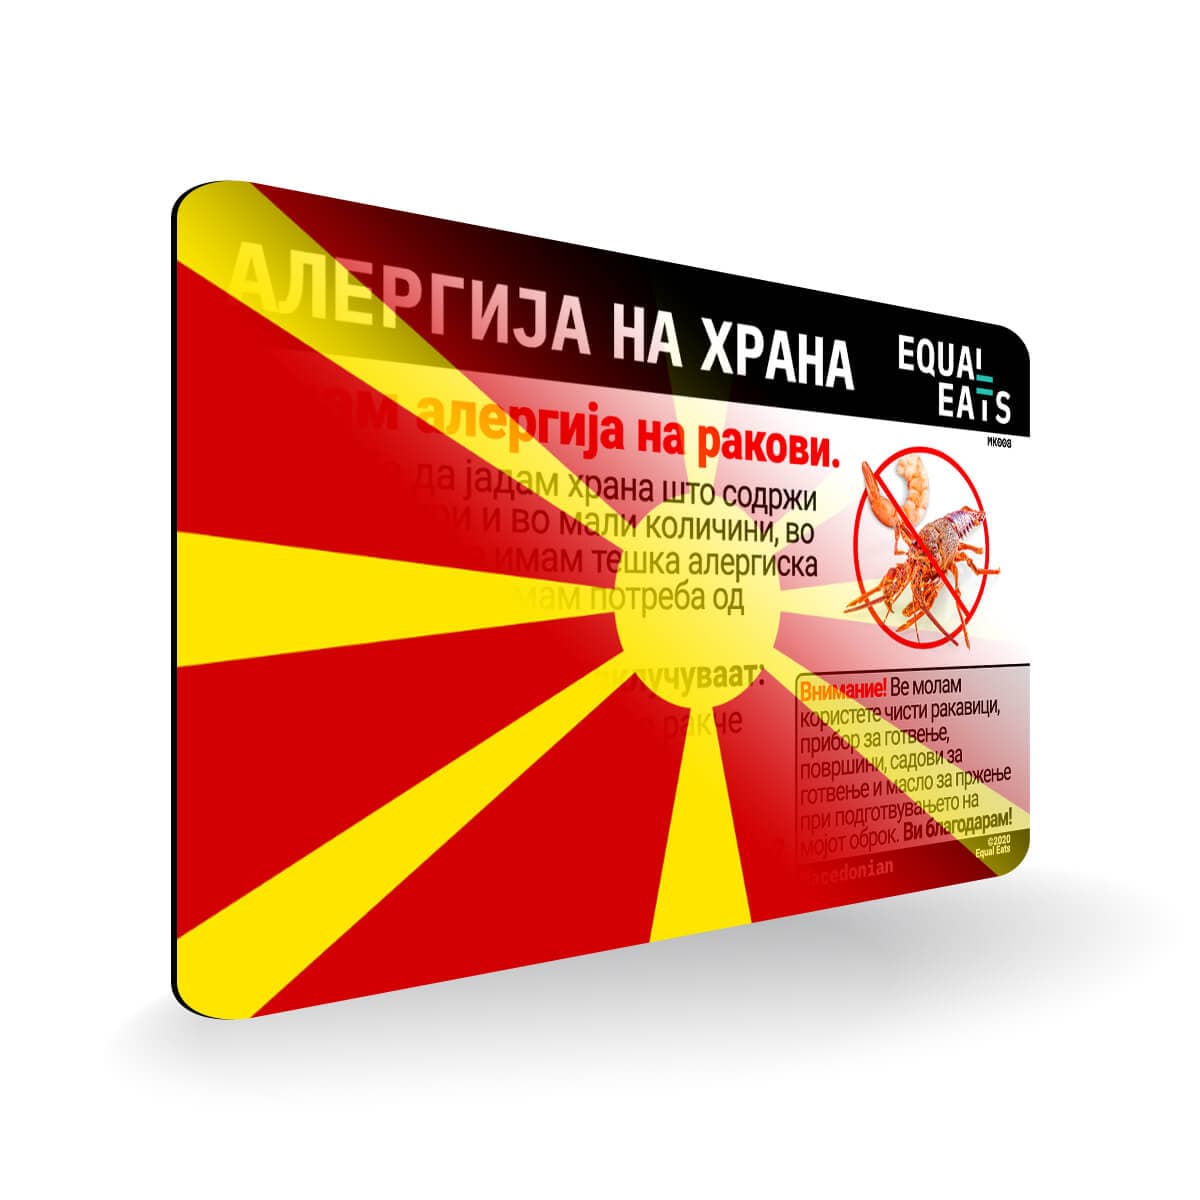 Crustacean Allergy in Macedonian. Crustacean Allergy Card for Macedonia